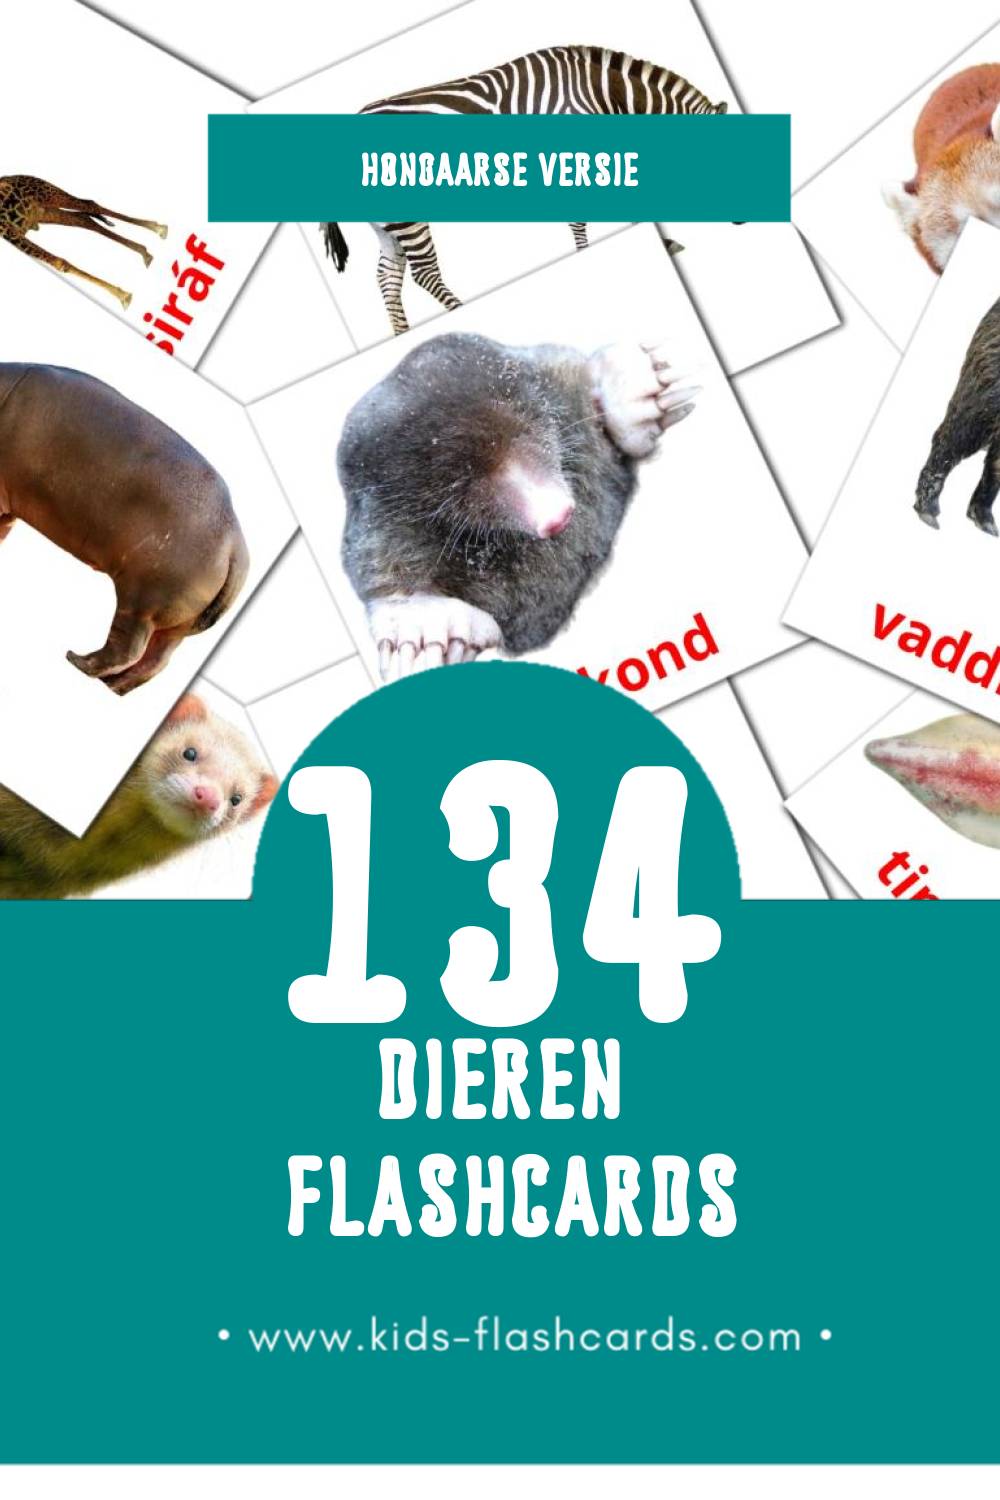 Visuele Állatok Flashcards voor Kleuters (134 kaarten in het Hongaars)